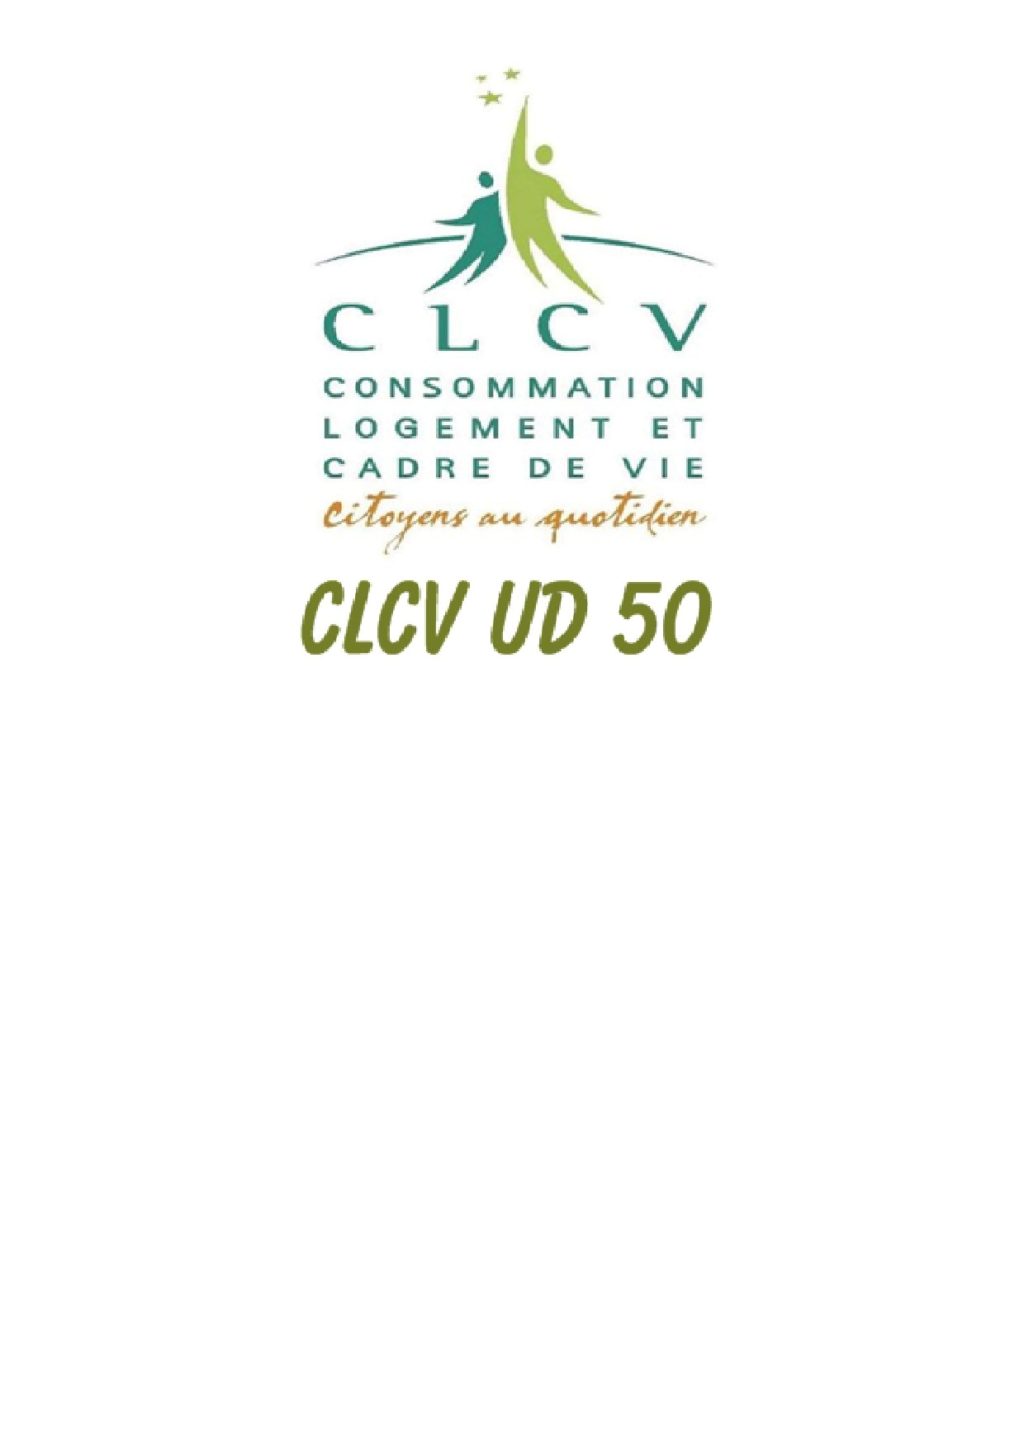 logo CLCV UD 50.jpg